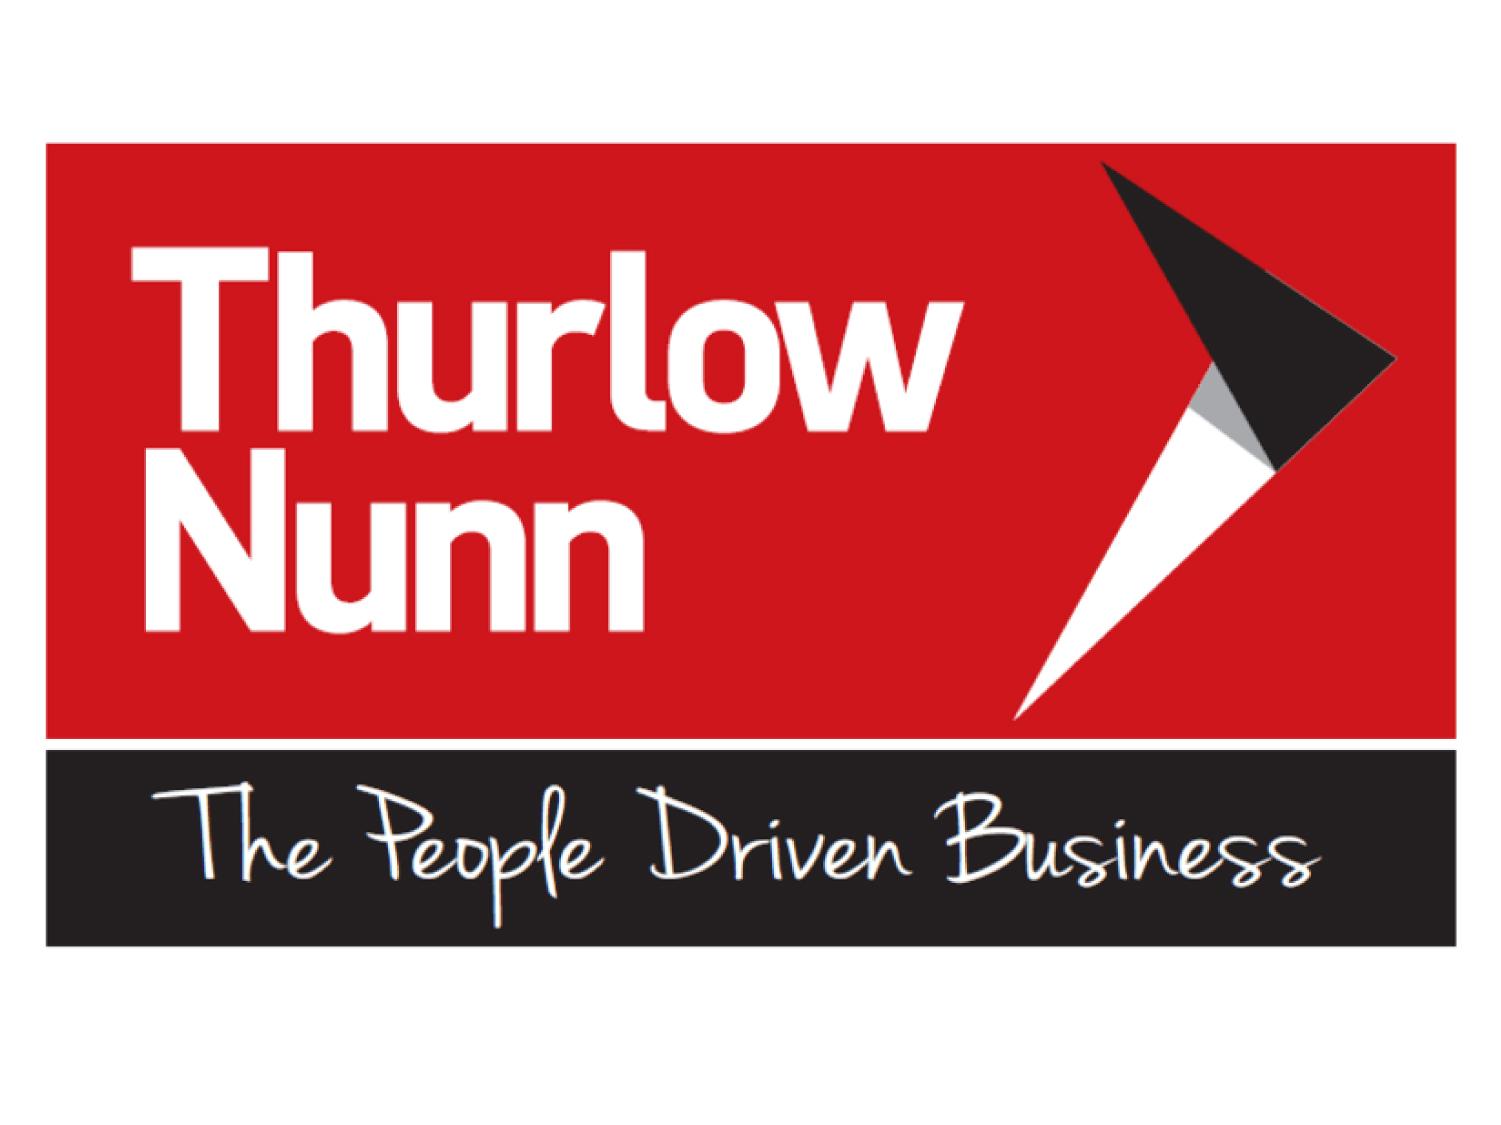 Thurlow Nunn Vauxhall Wisbech